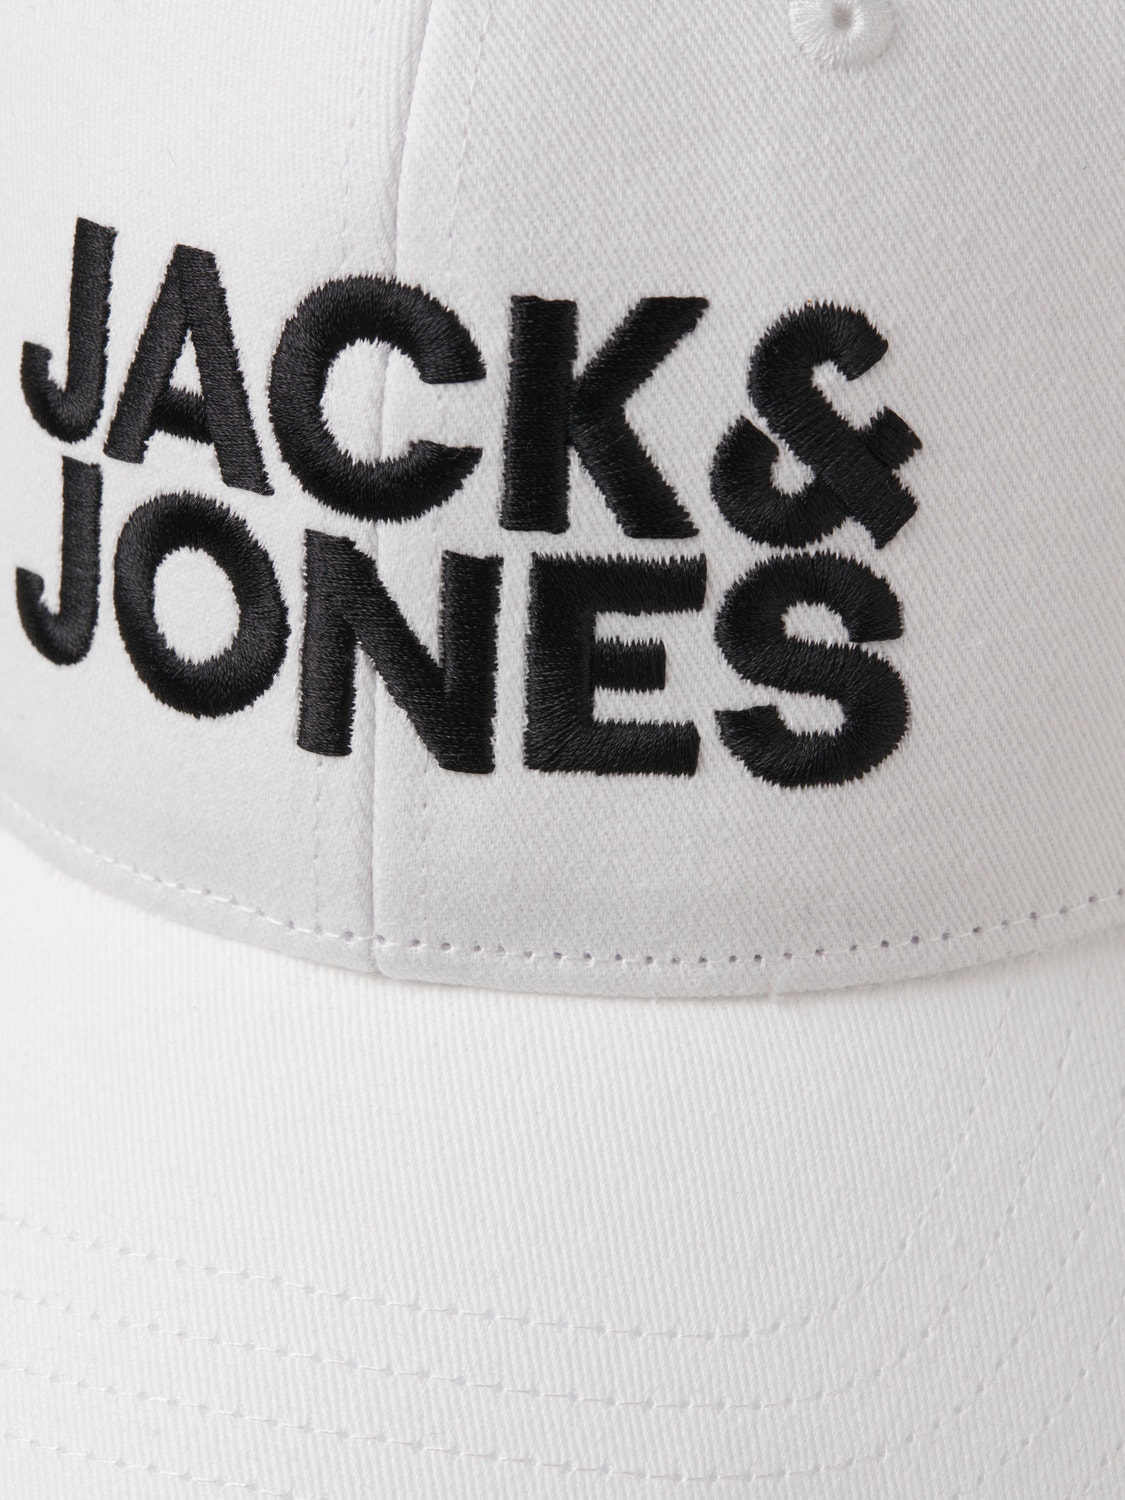 Jack & Jones Cappellino baseball -White - 12254296